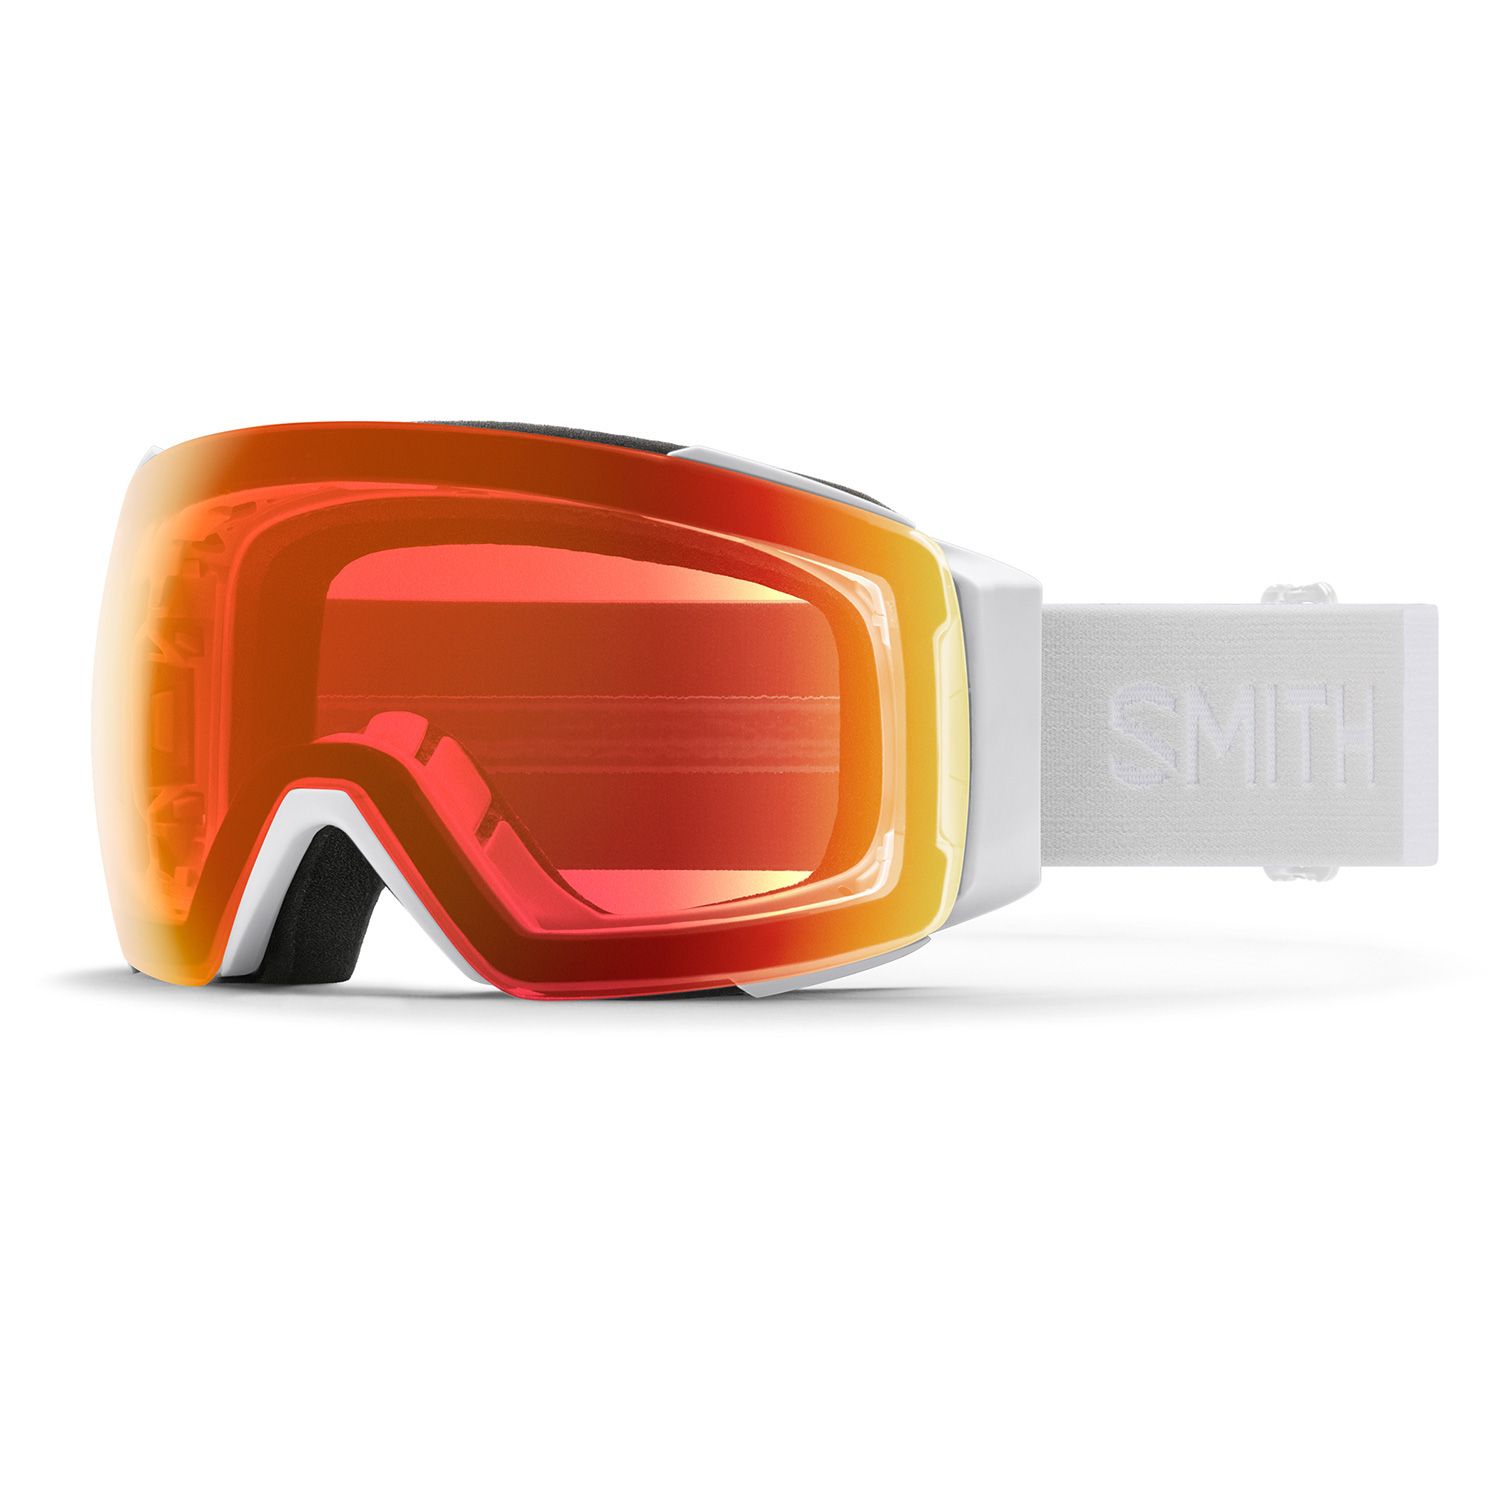 Billede af Smith I/O MAG, skibriller, White Vapor hos Skisport.dk